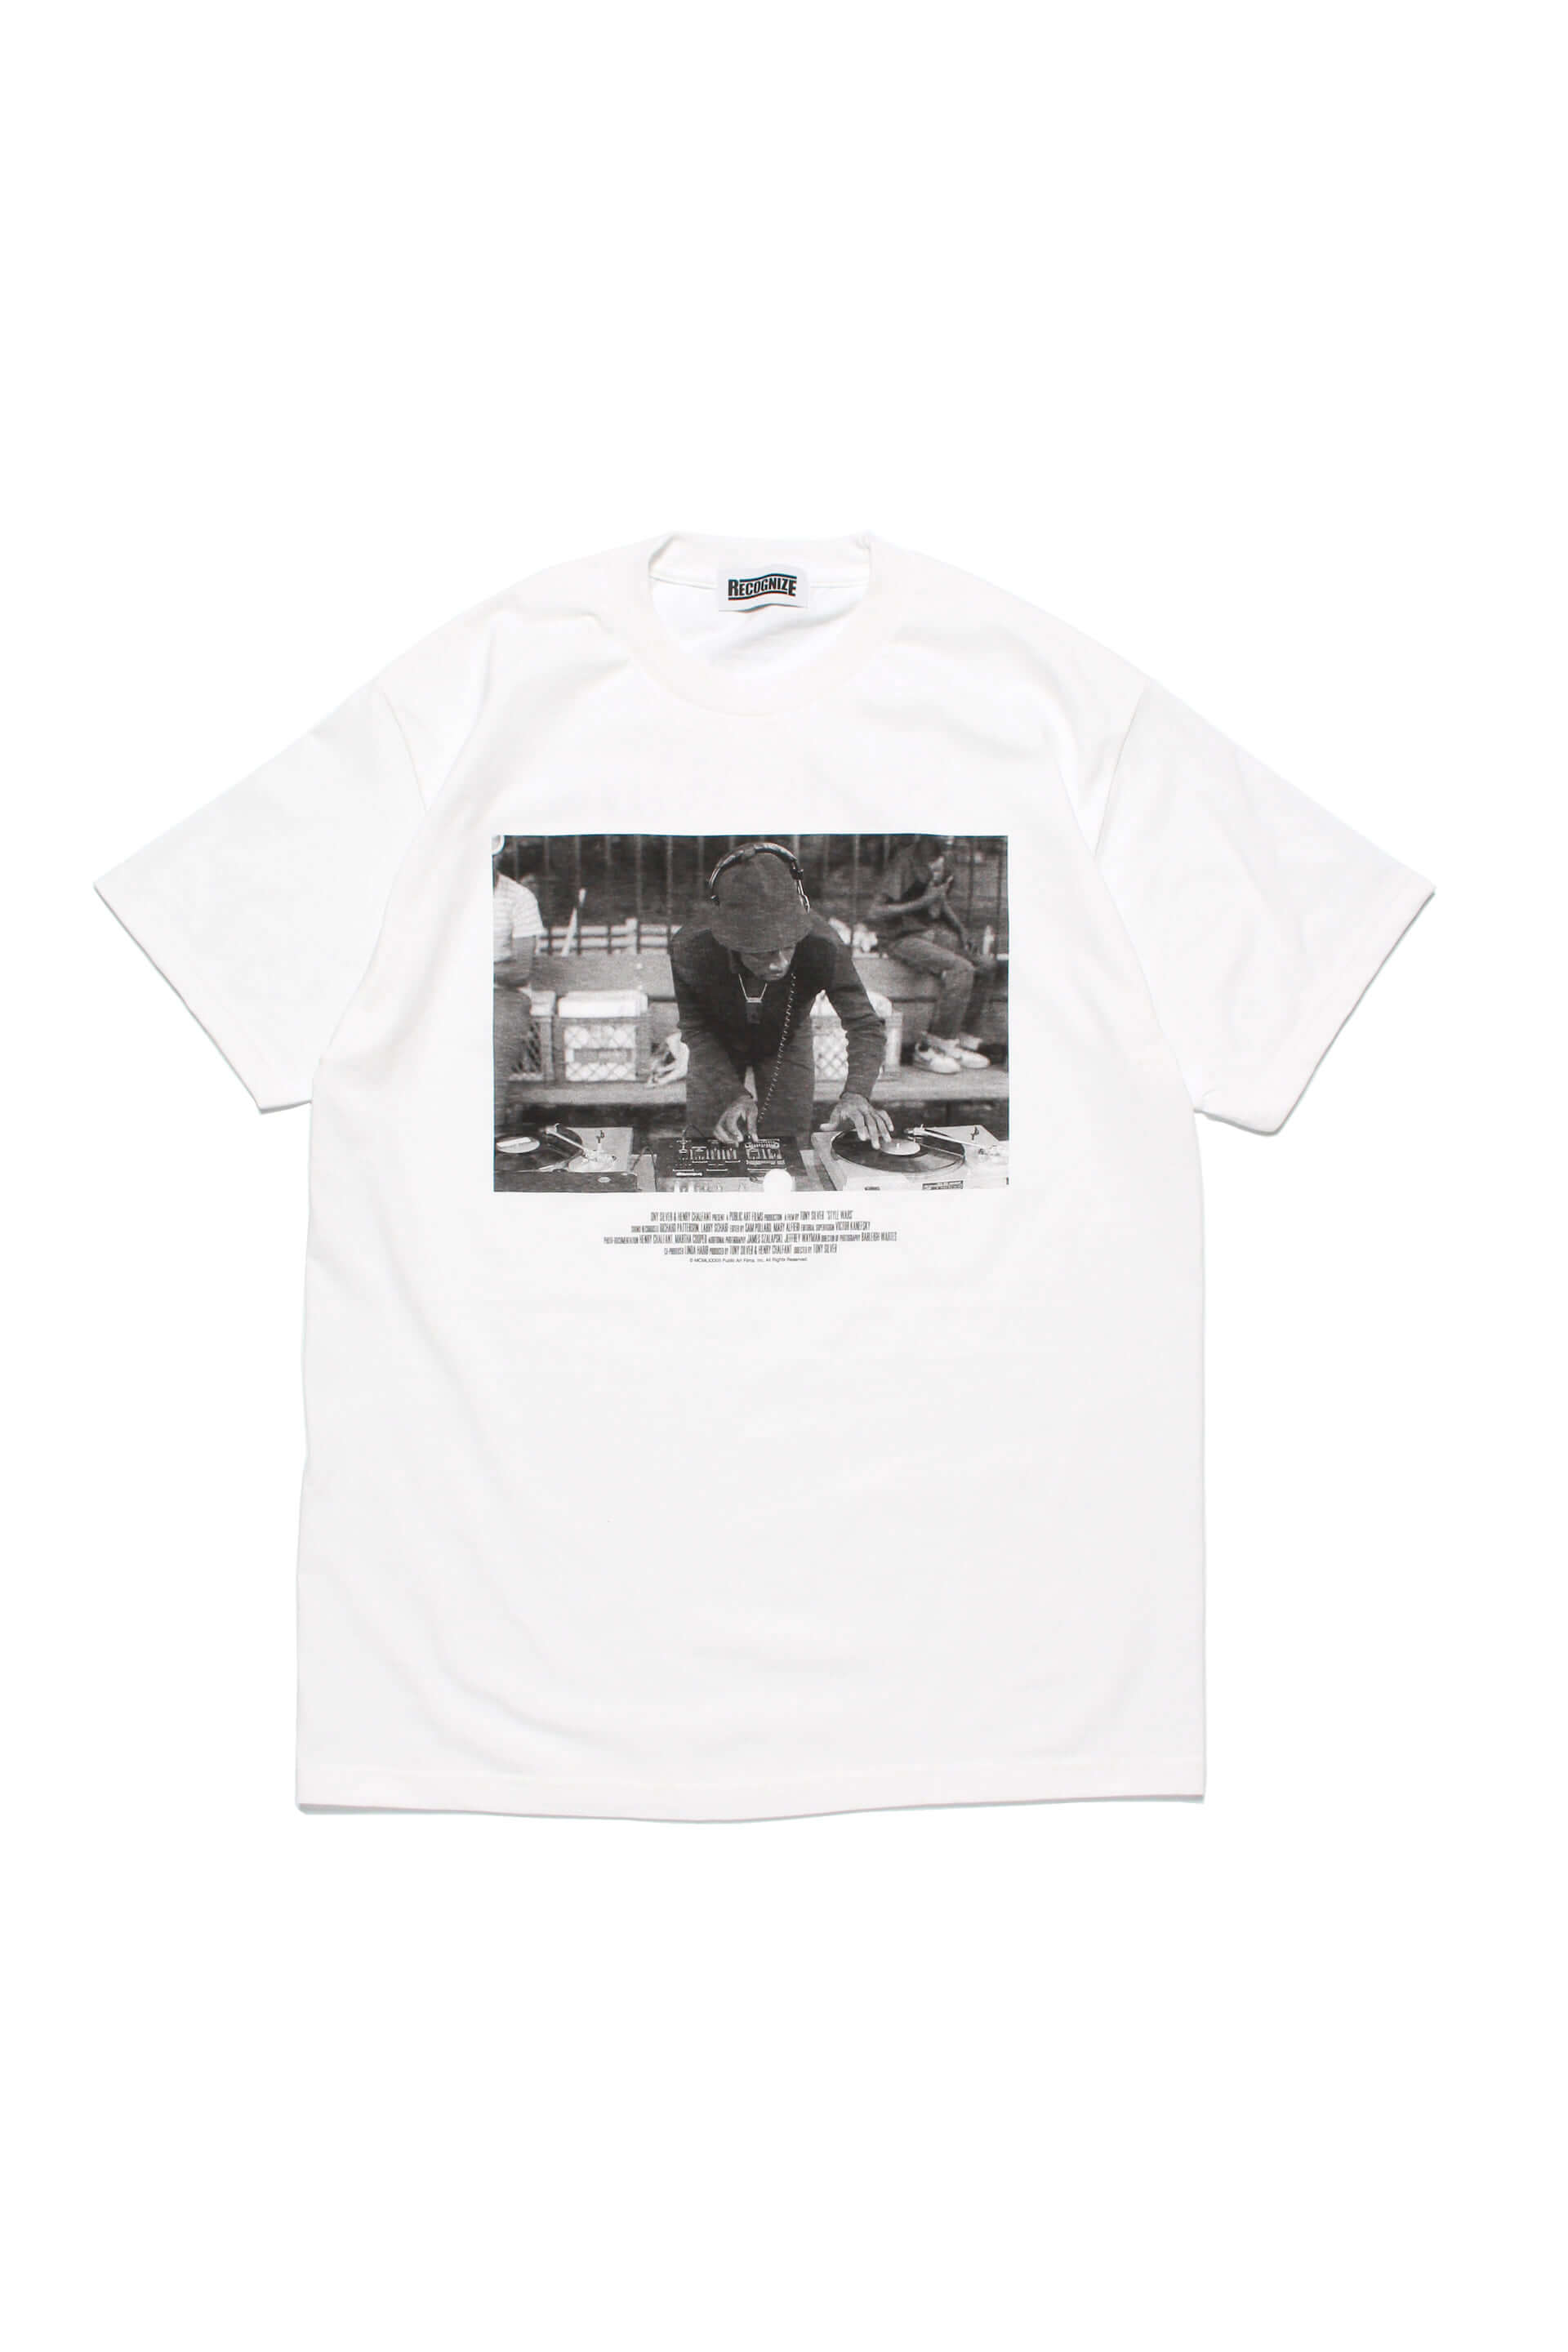 映画 Style Wars とmuroのブランド Recognize がコラボ Nyストリートでの写真をプリントしたtシャツ2種が発売決定 Qetic